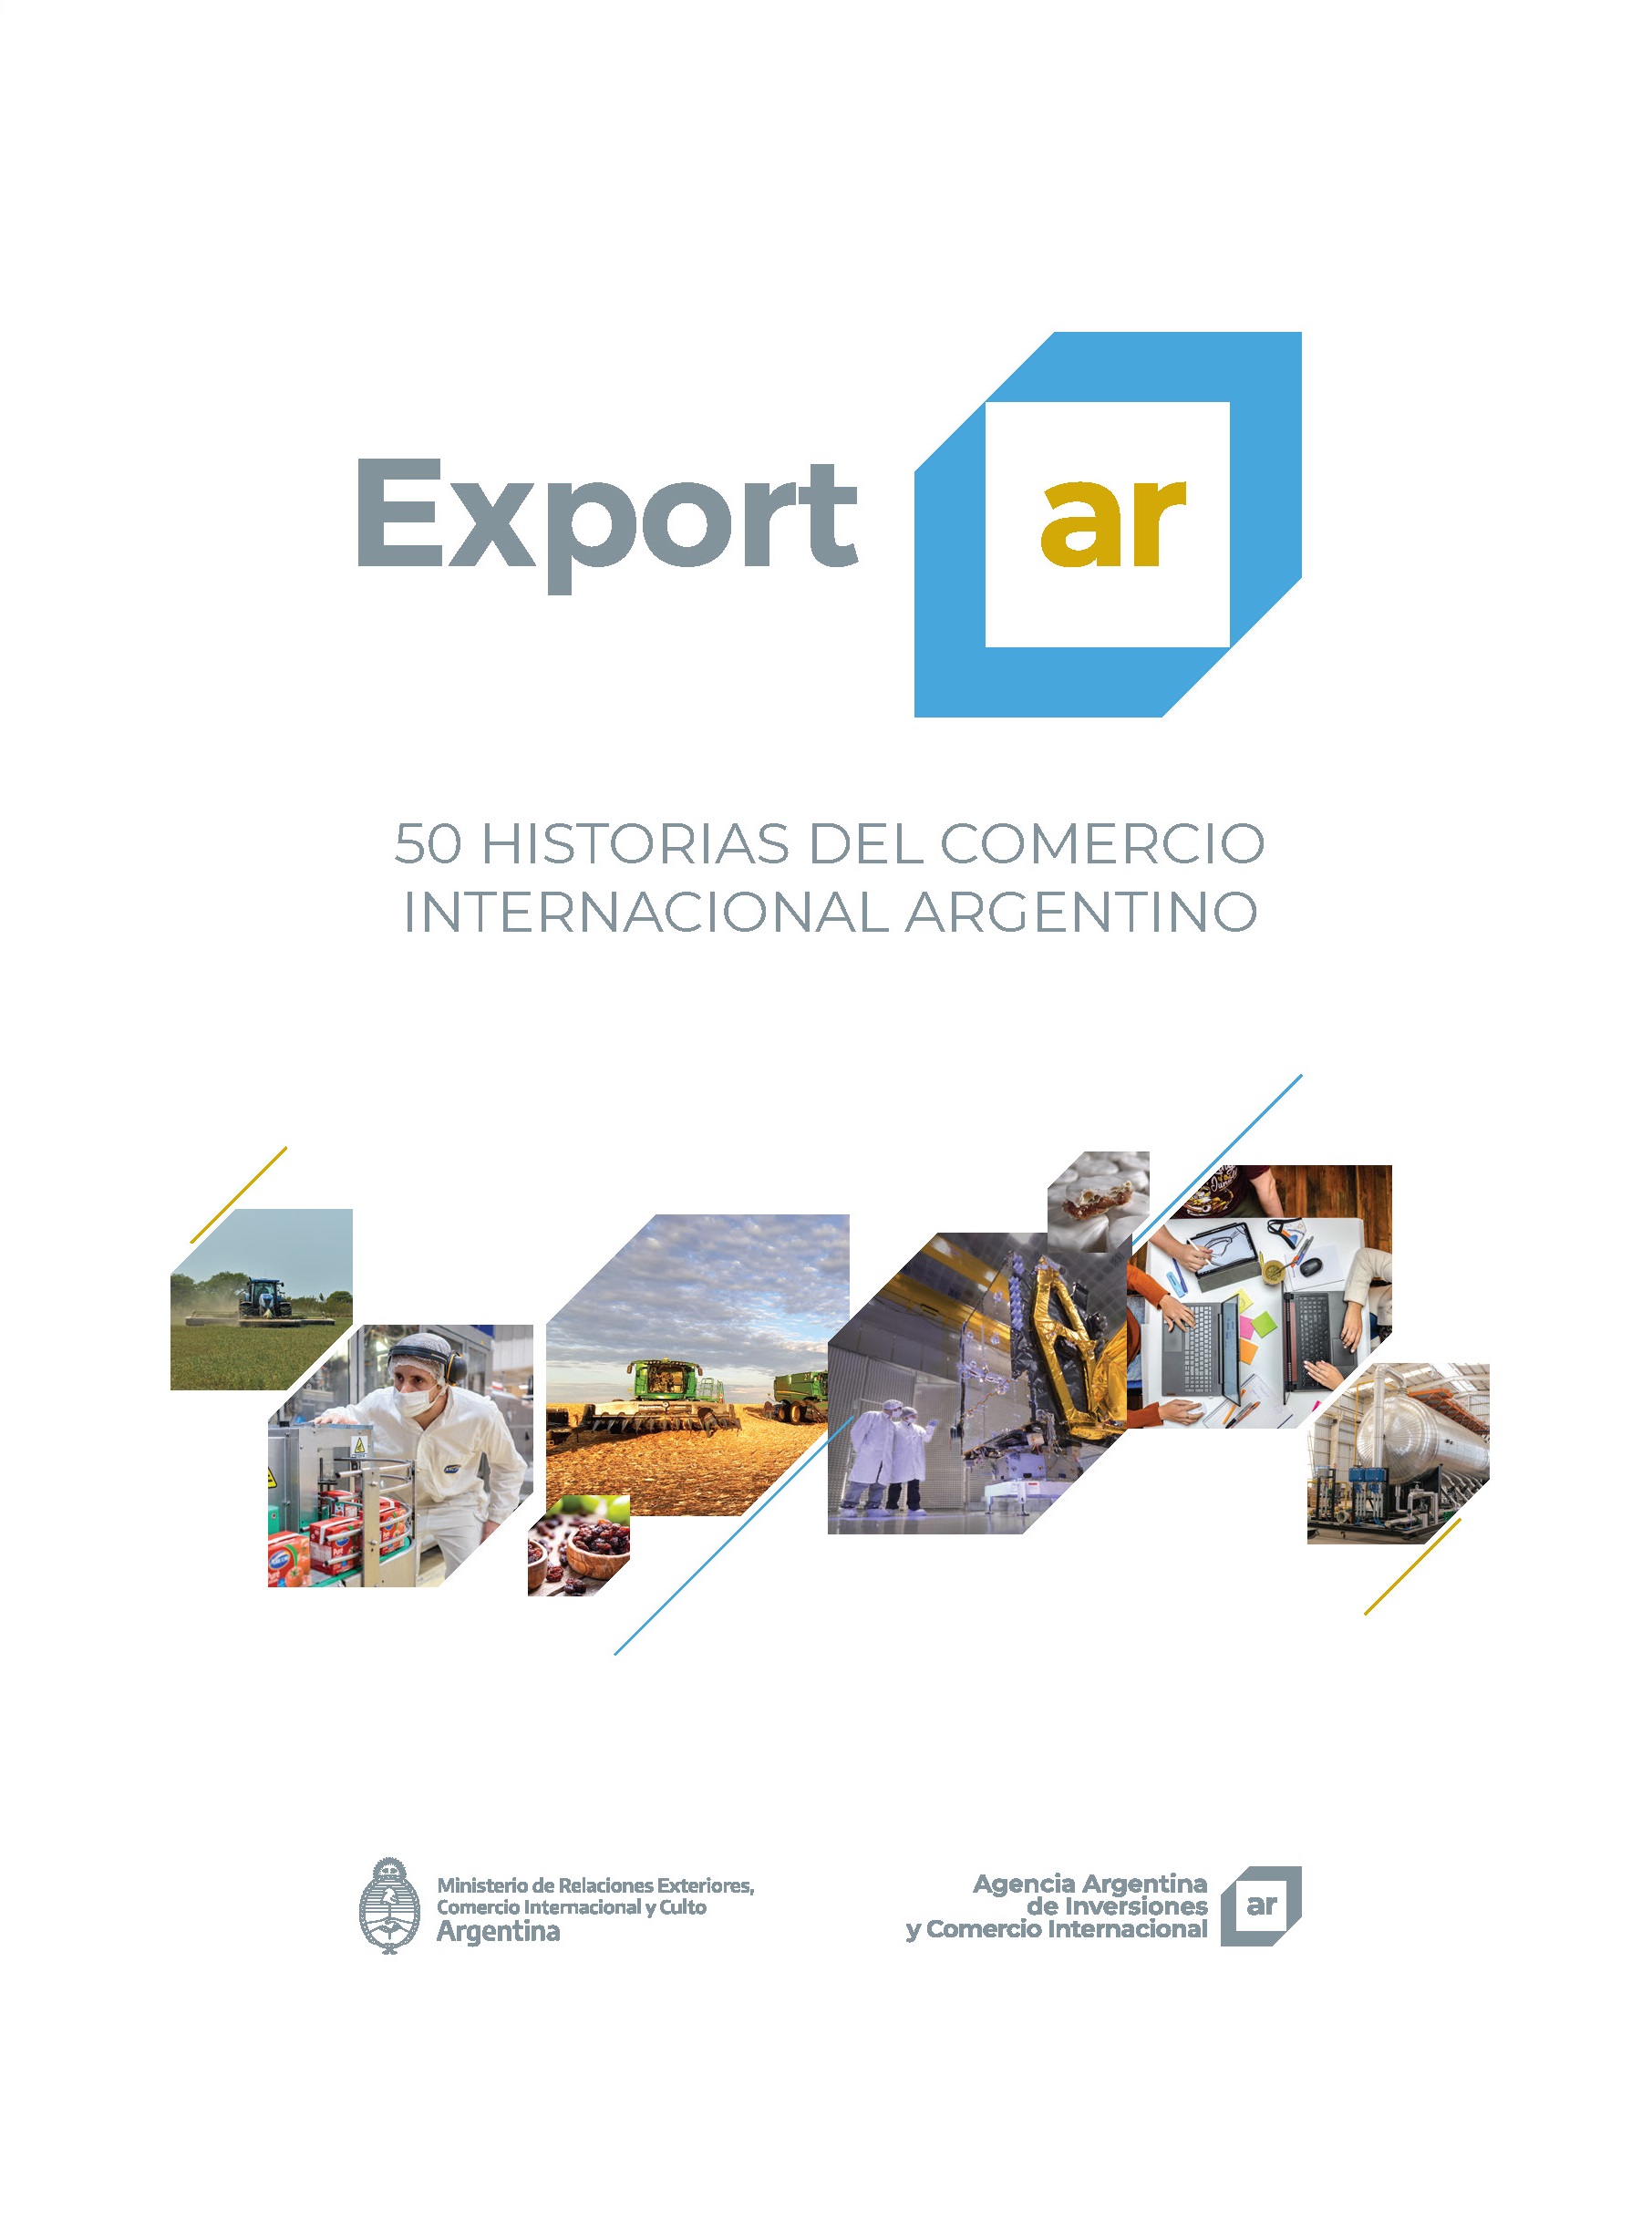 https://www.inversionycomercio.org.ar/images/publicaciones/Exportar. 50 historias del comercio internacional argentino